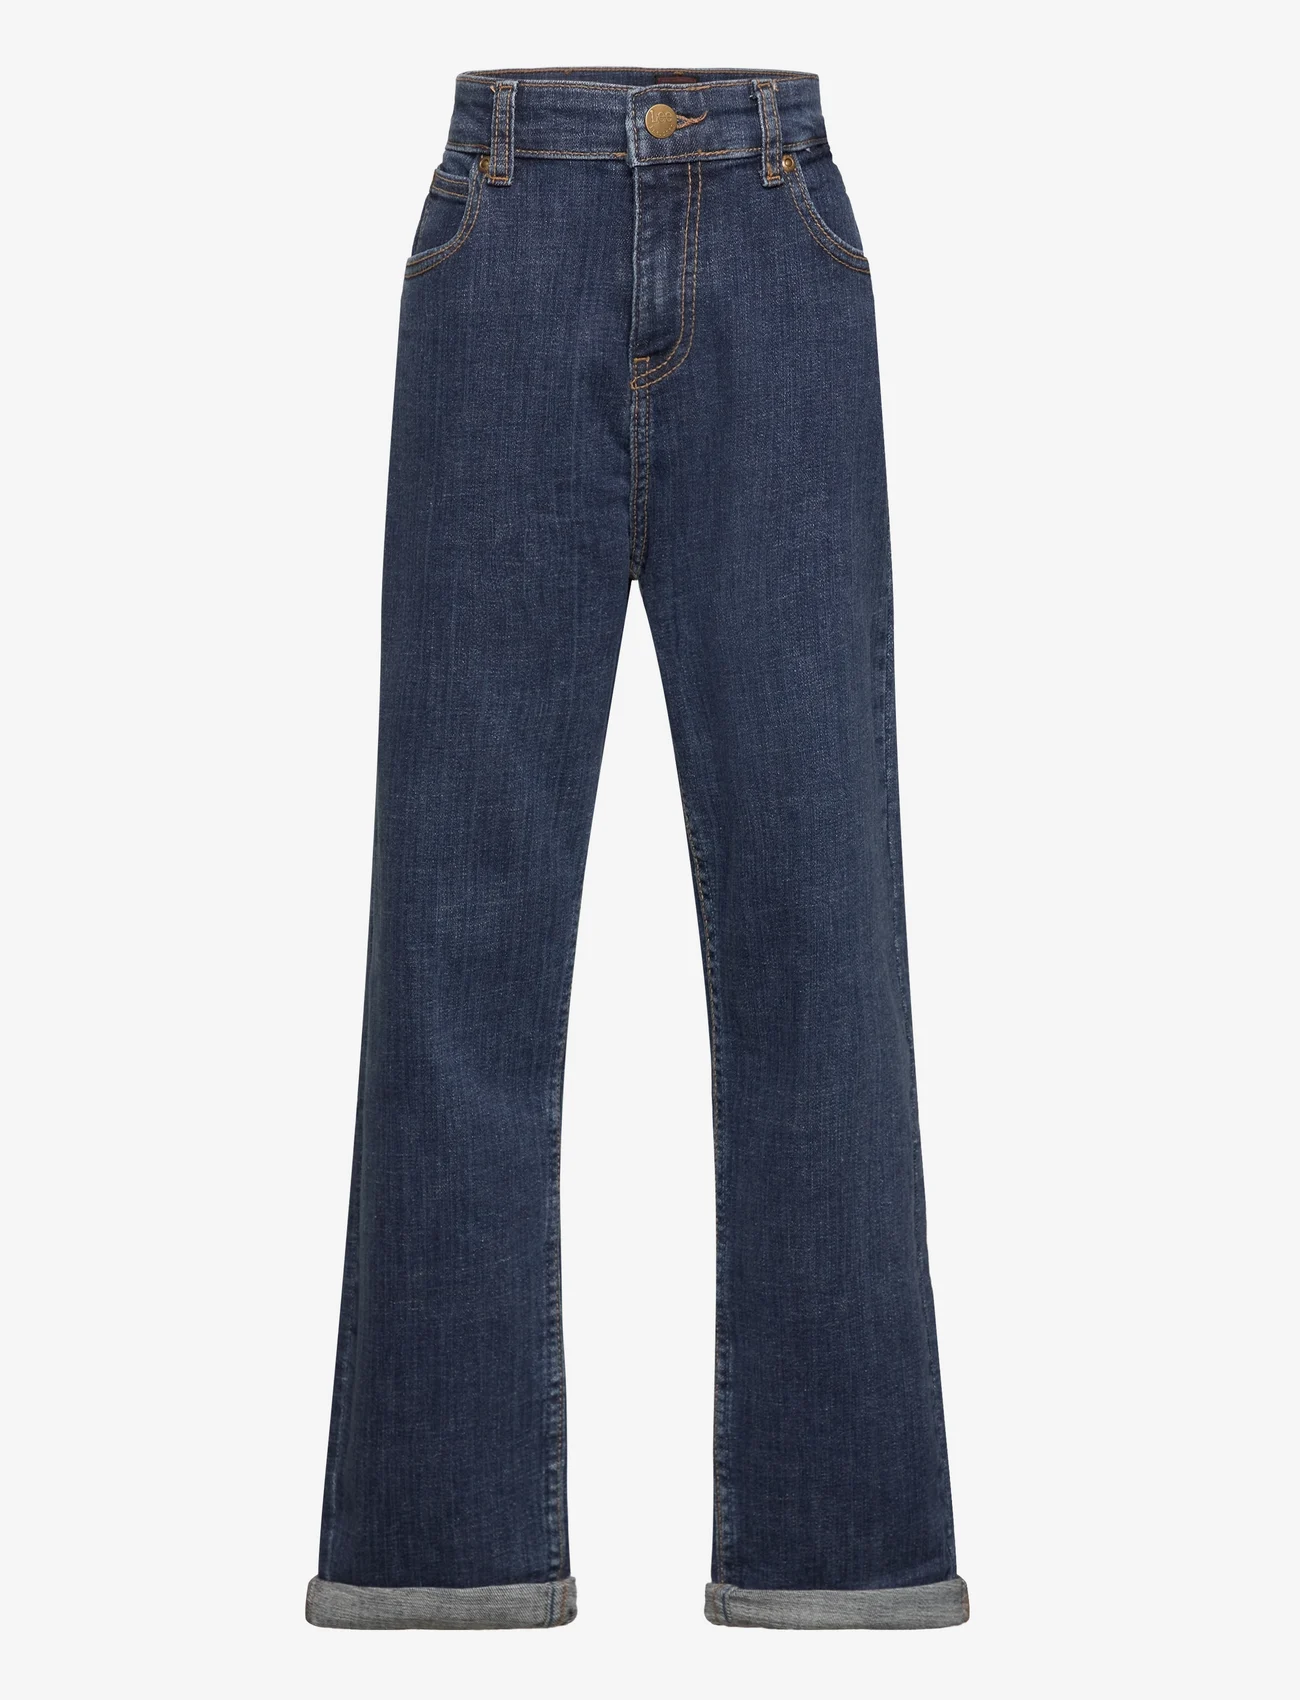 Lee Jeans - Asher - hosen mit weitem bein - dark worn wash - 0